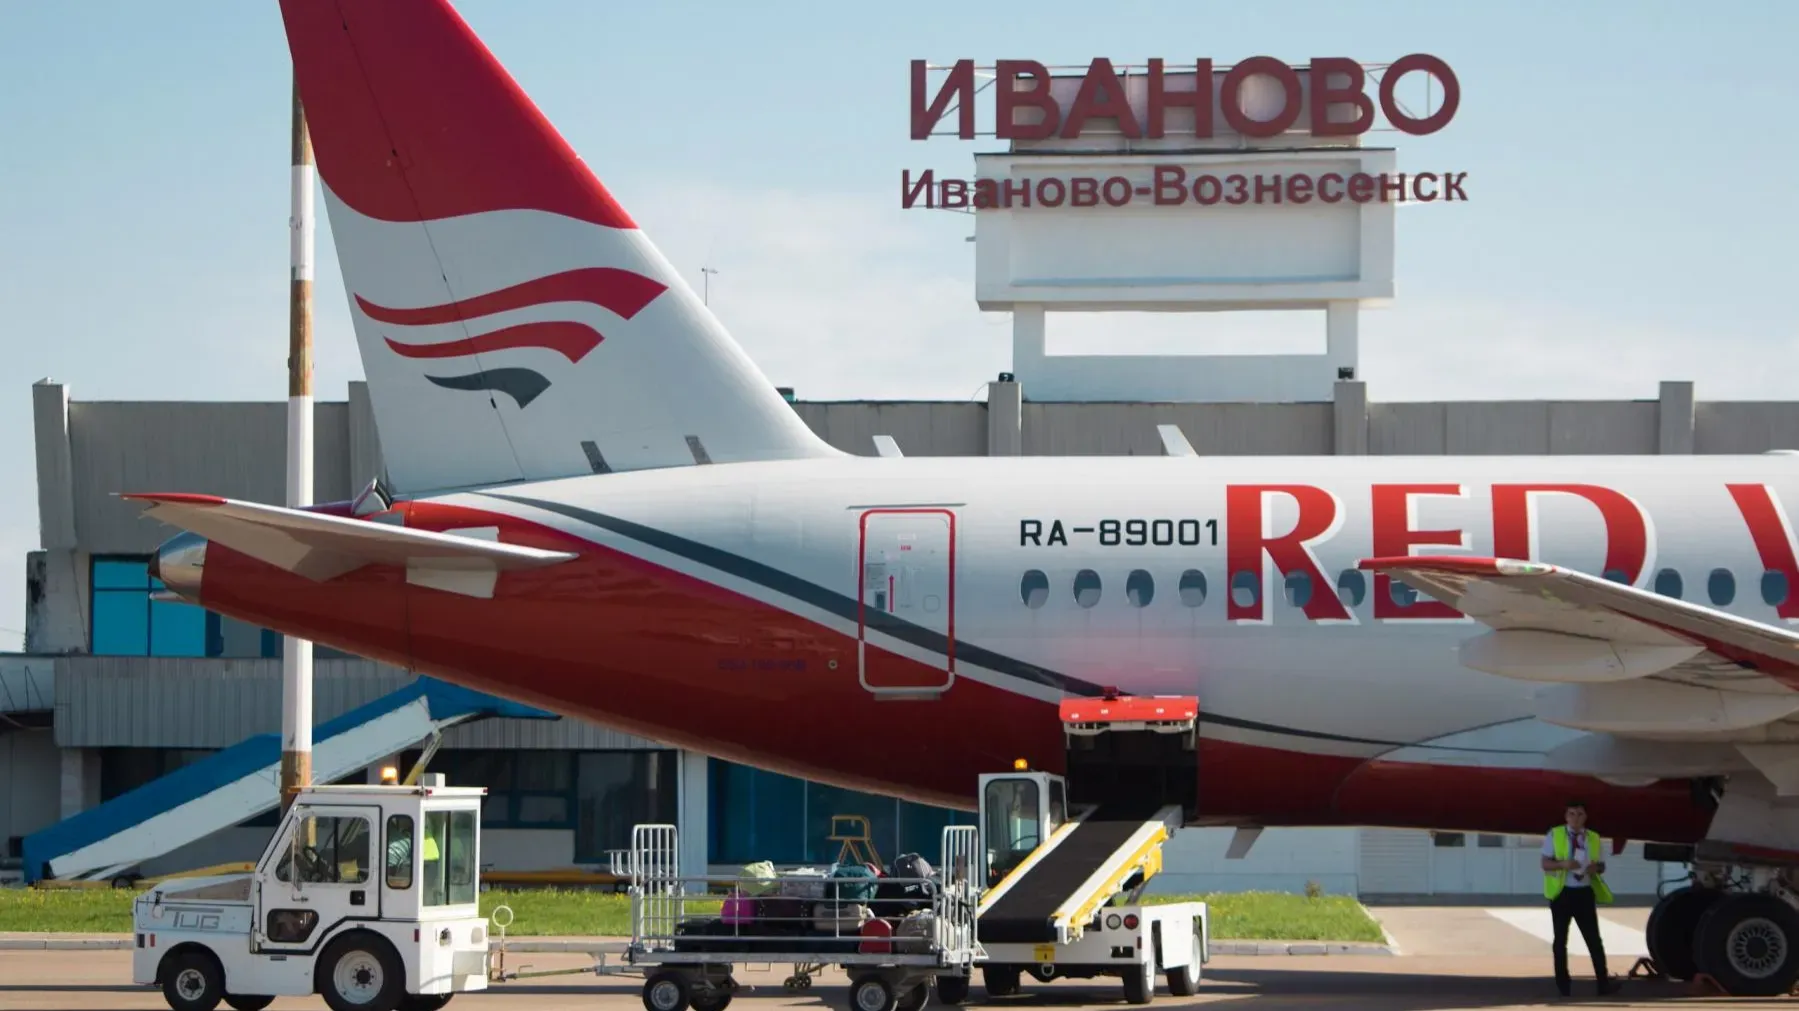 Комиссия Росавиации 15 апреля прибудет в регион для проведения повторной сертификации аэропорта...